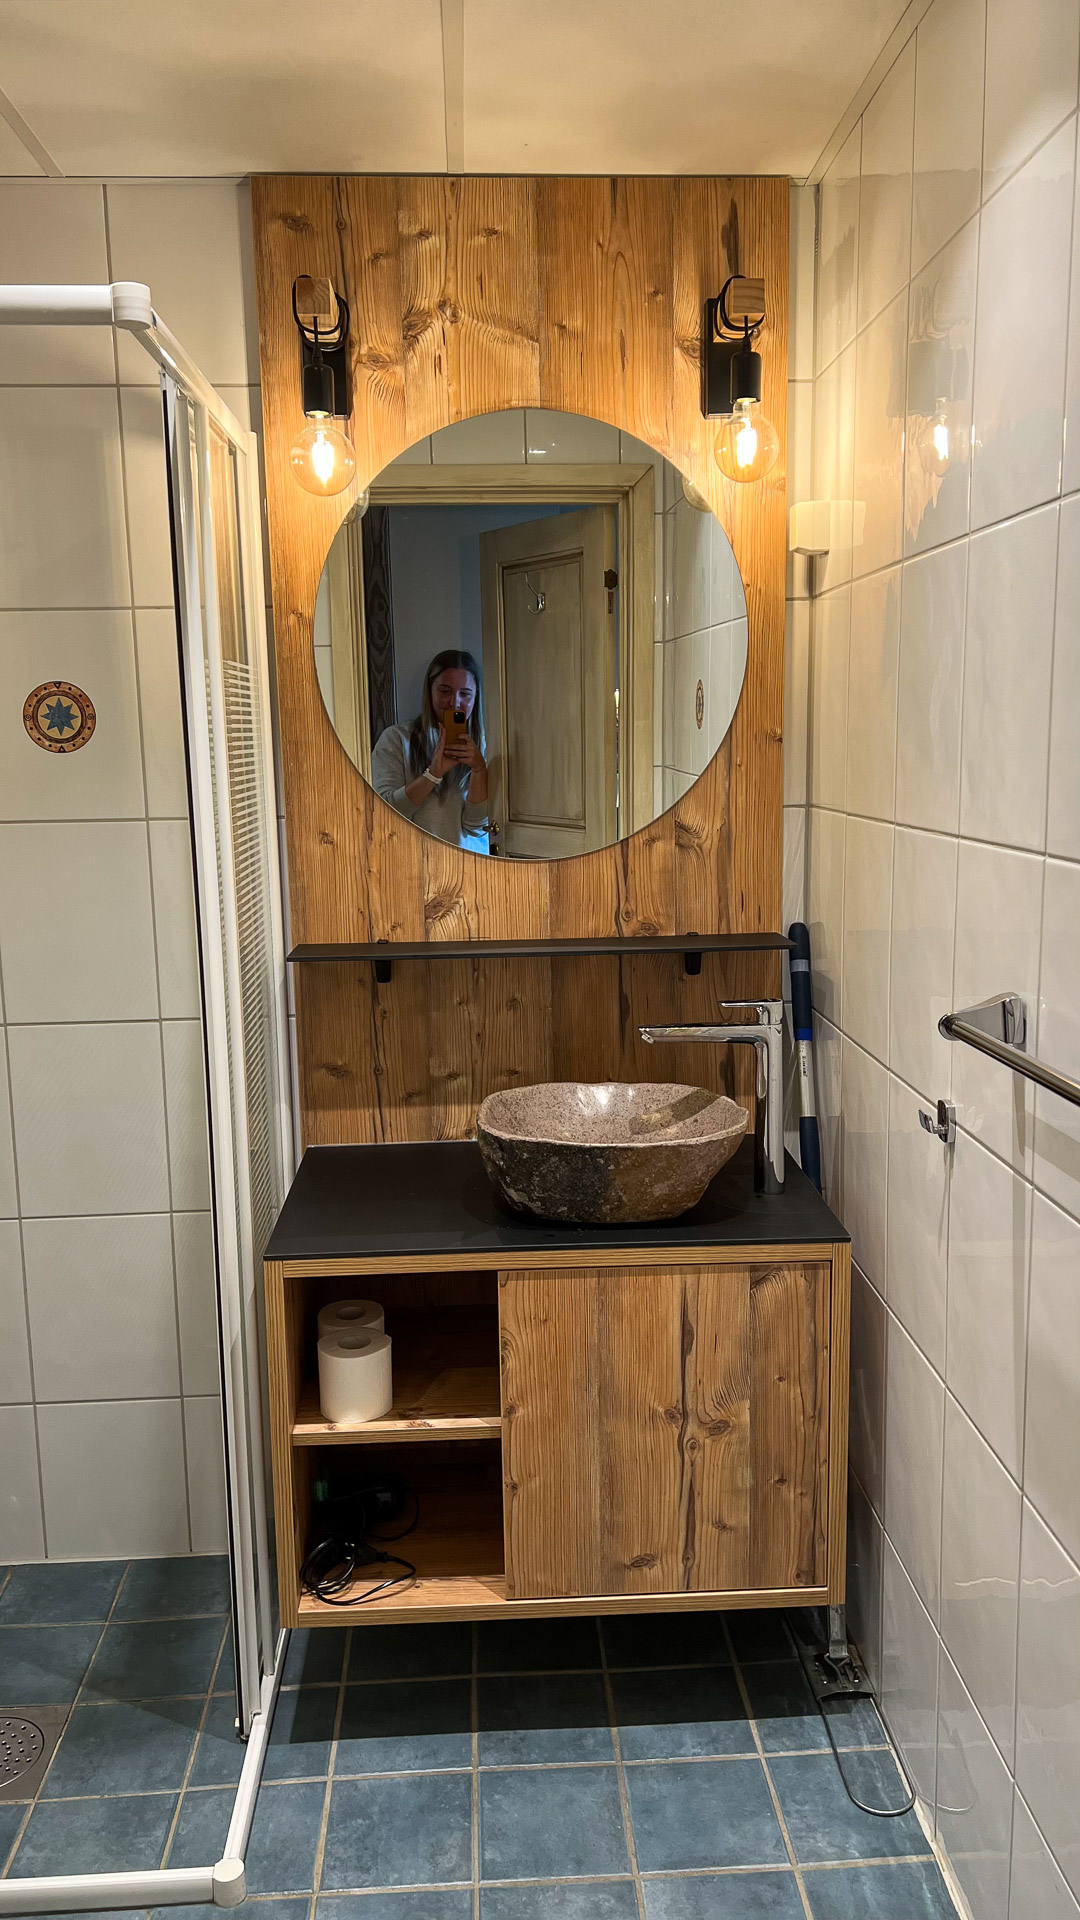 baderom med tredetaljer og en kvinne reflektert i speil